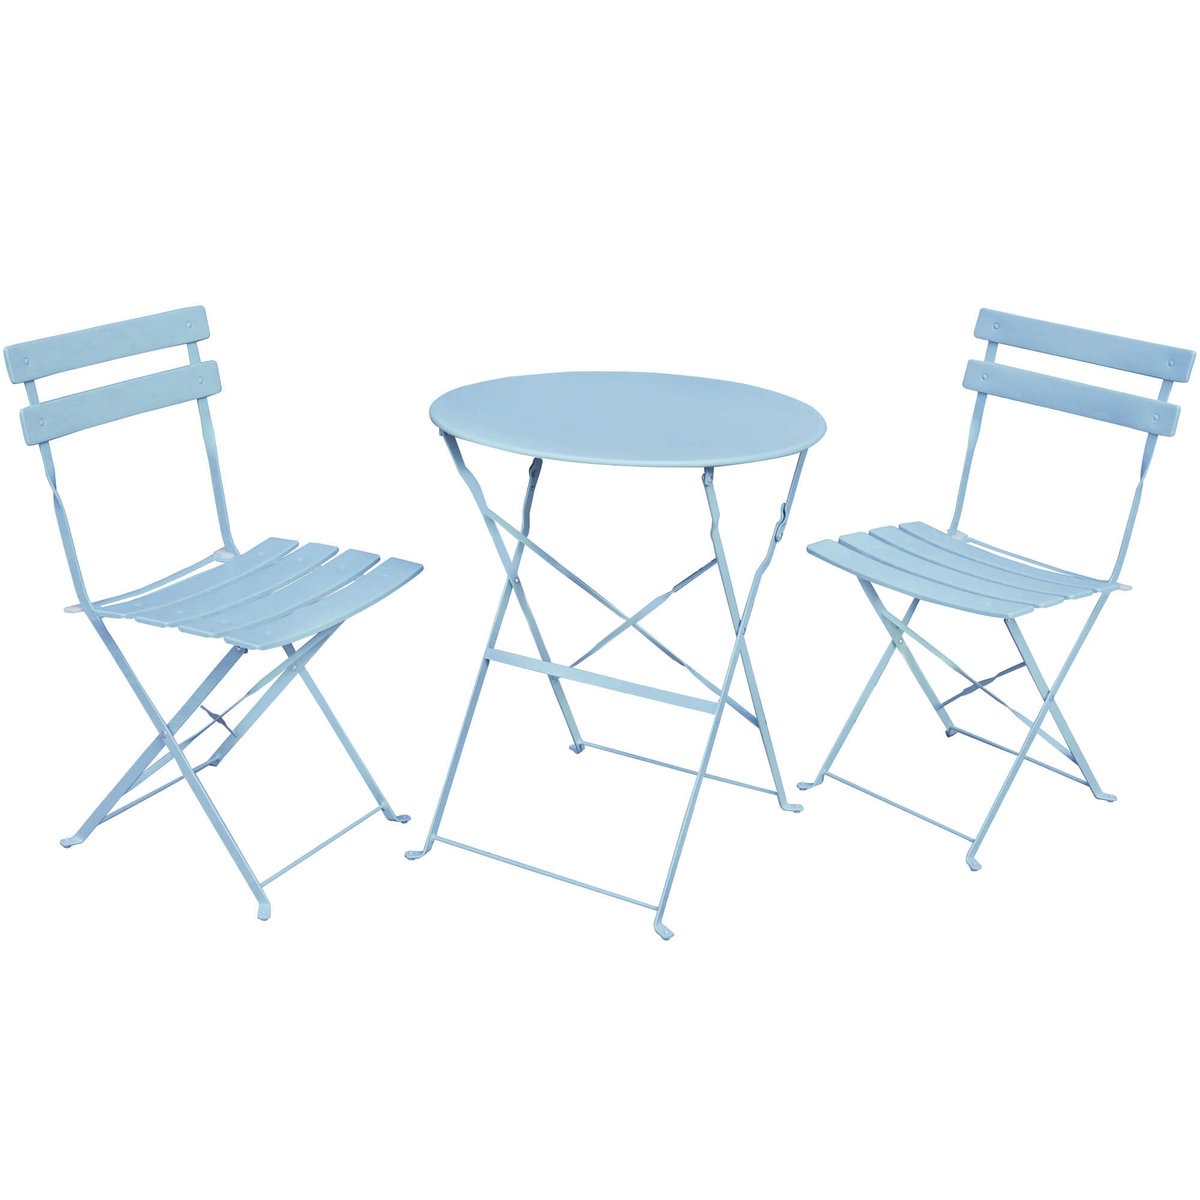 Zestaw balkonowy Orion stół + 2 krzesła meble ogrodowe taras Niebieski